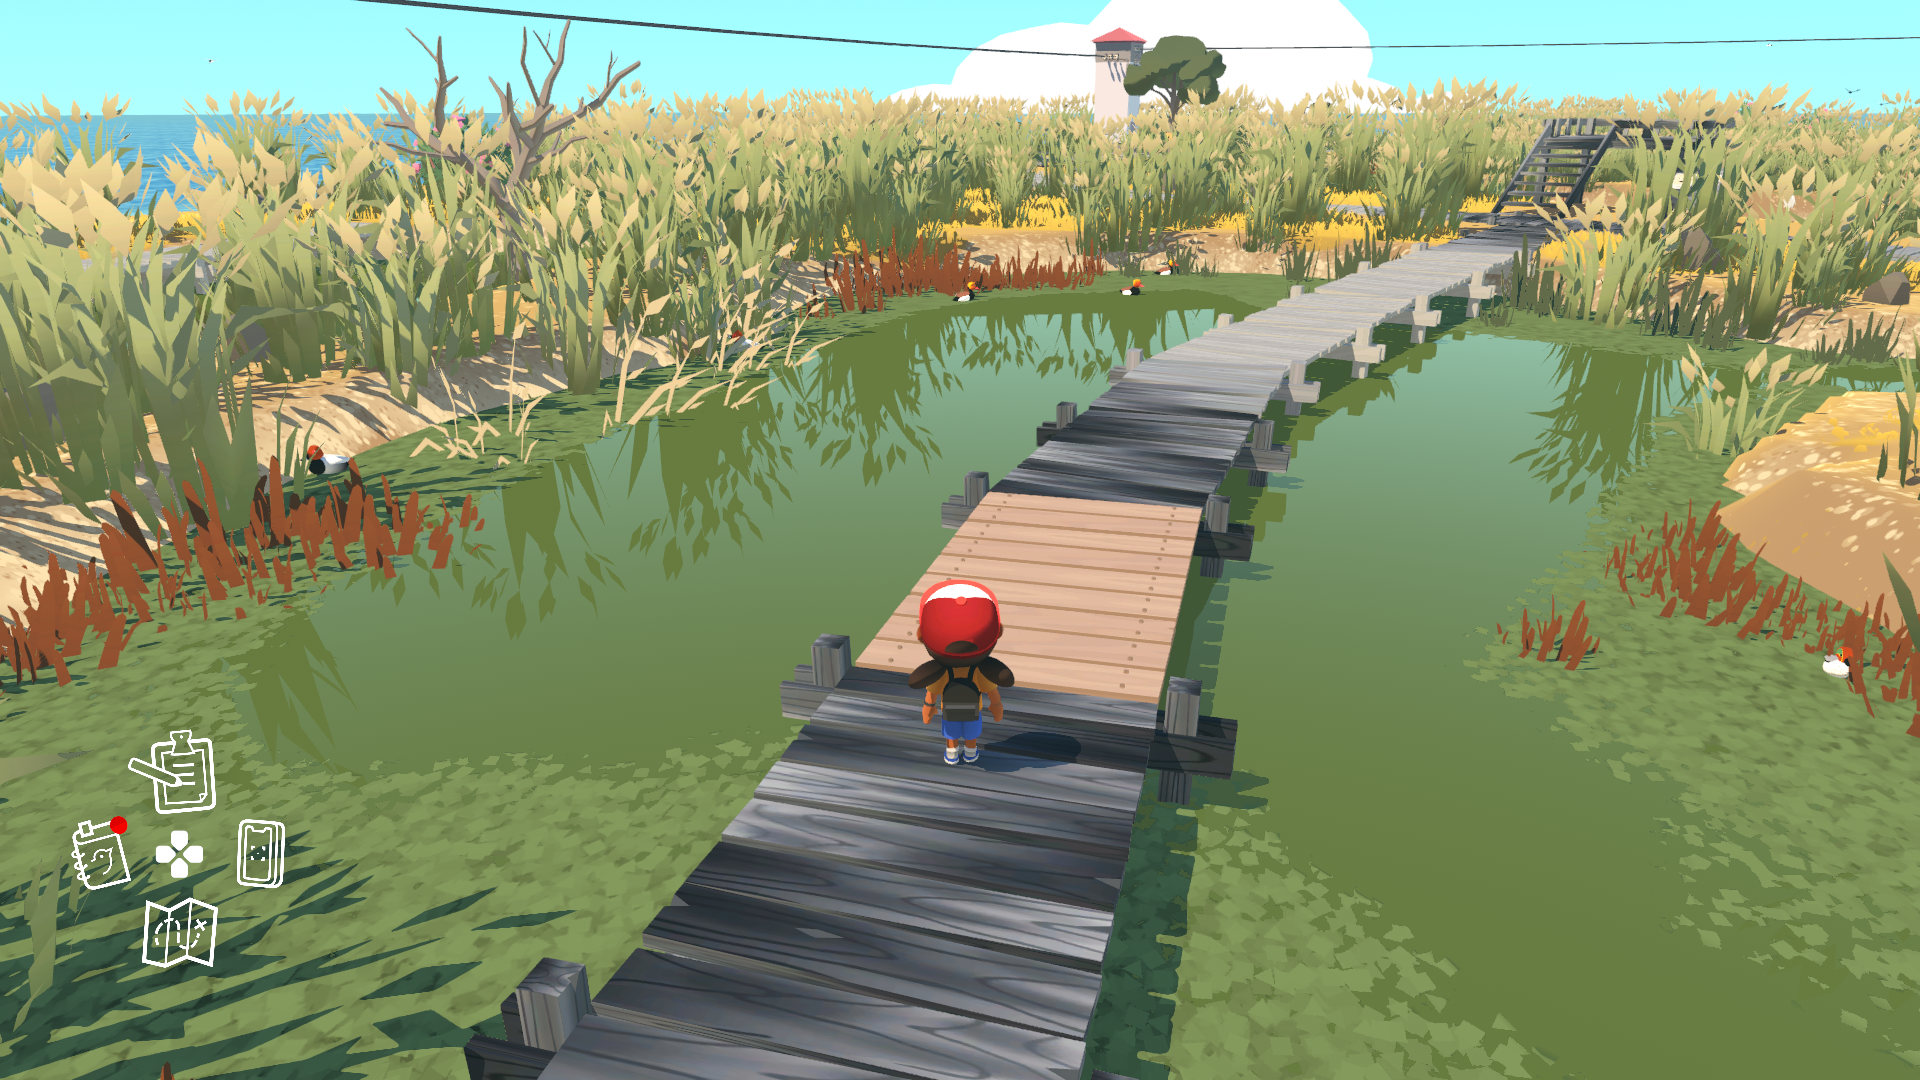 capture d'écran du jeu montrant un personnage marchant sur un chemin en bois au dessus d'une mare